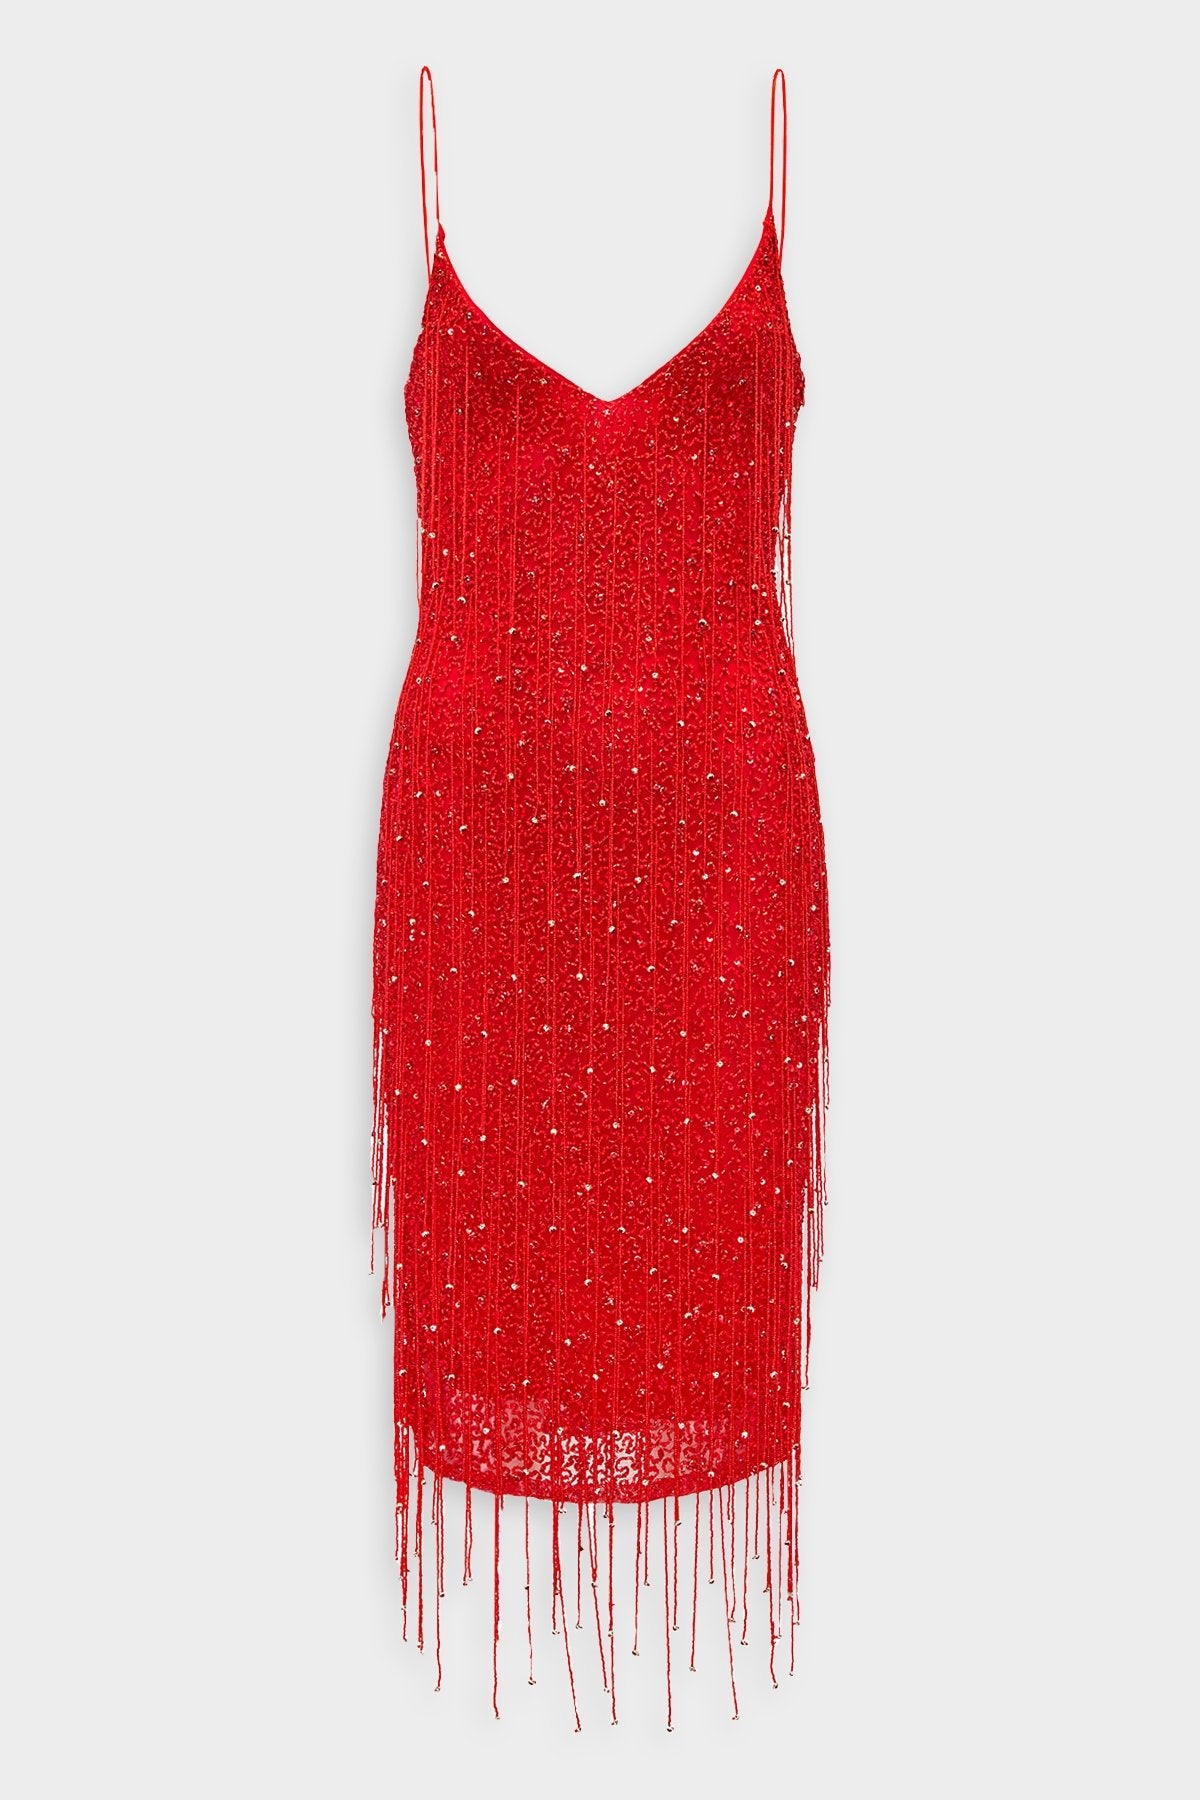 Billie Dress in Red with Fringes - shop-olivia.com